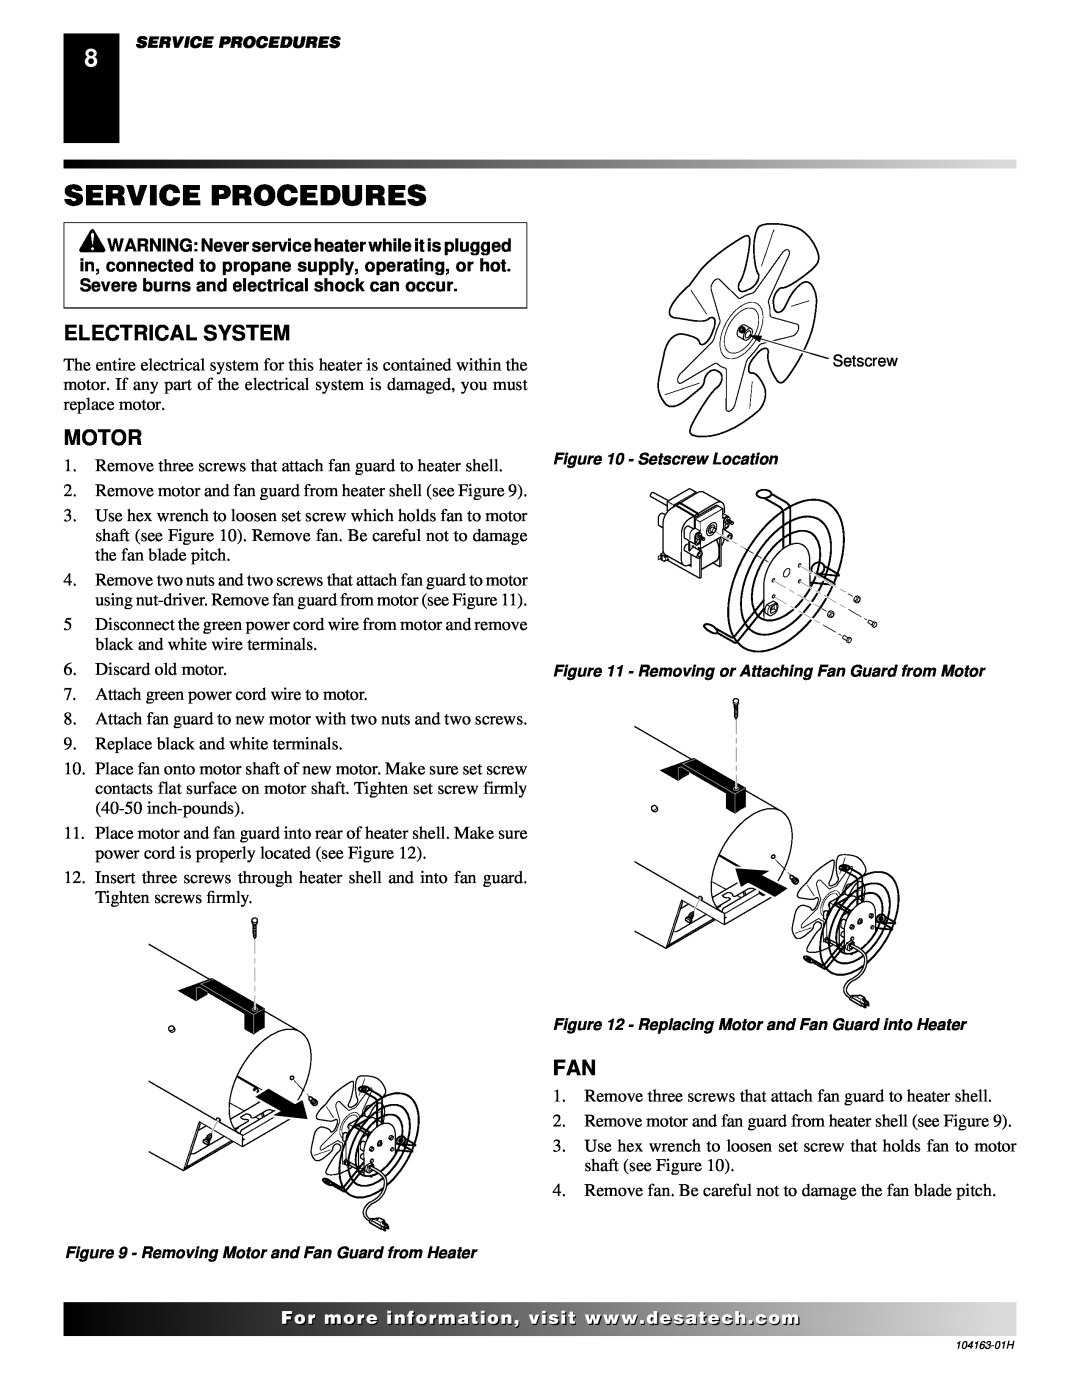 Desa REM30LP owner manual Service Procedures, Electrical System, Motor 